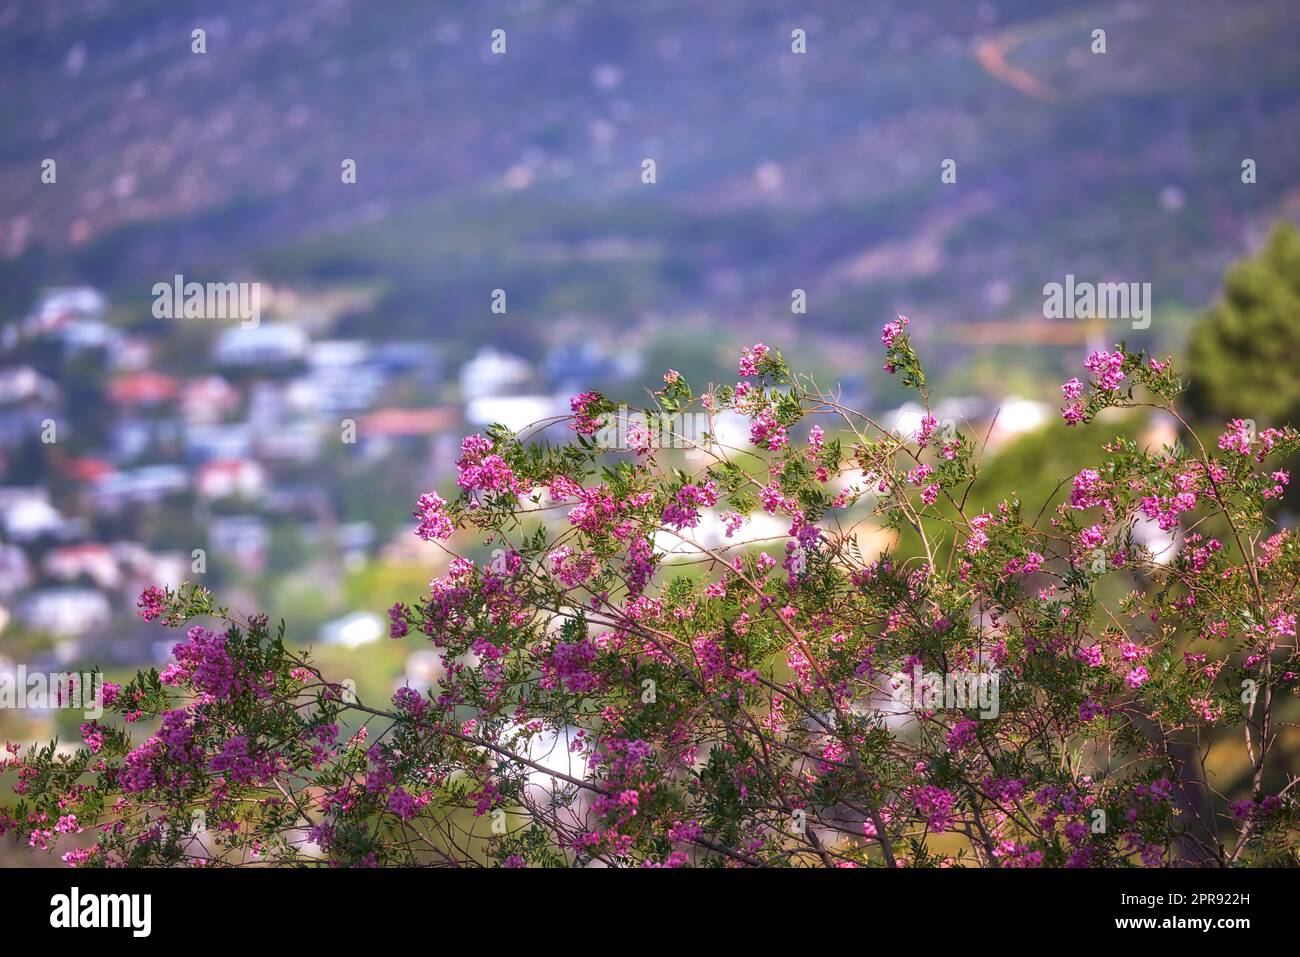 Fleur de papier rose sur des tiges vertes poussant sur une colline sur un fond urbain de ville. Gros plan sur un paysage pittoresque avec des espèces de plantes et de fleurs indigènes du Bush qui poussent sur la montagne Banque D'Images